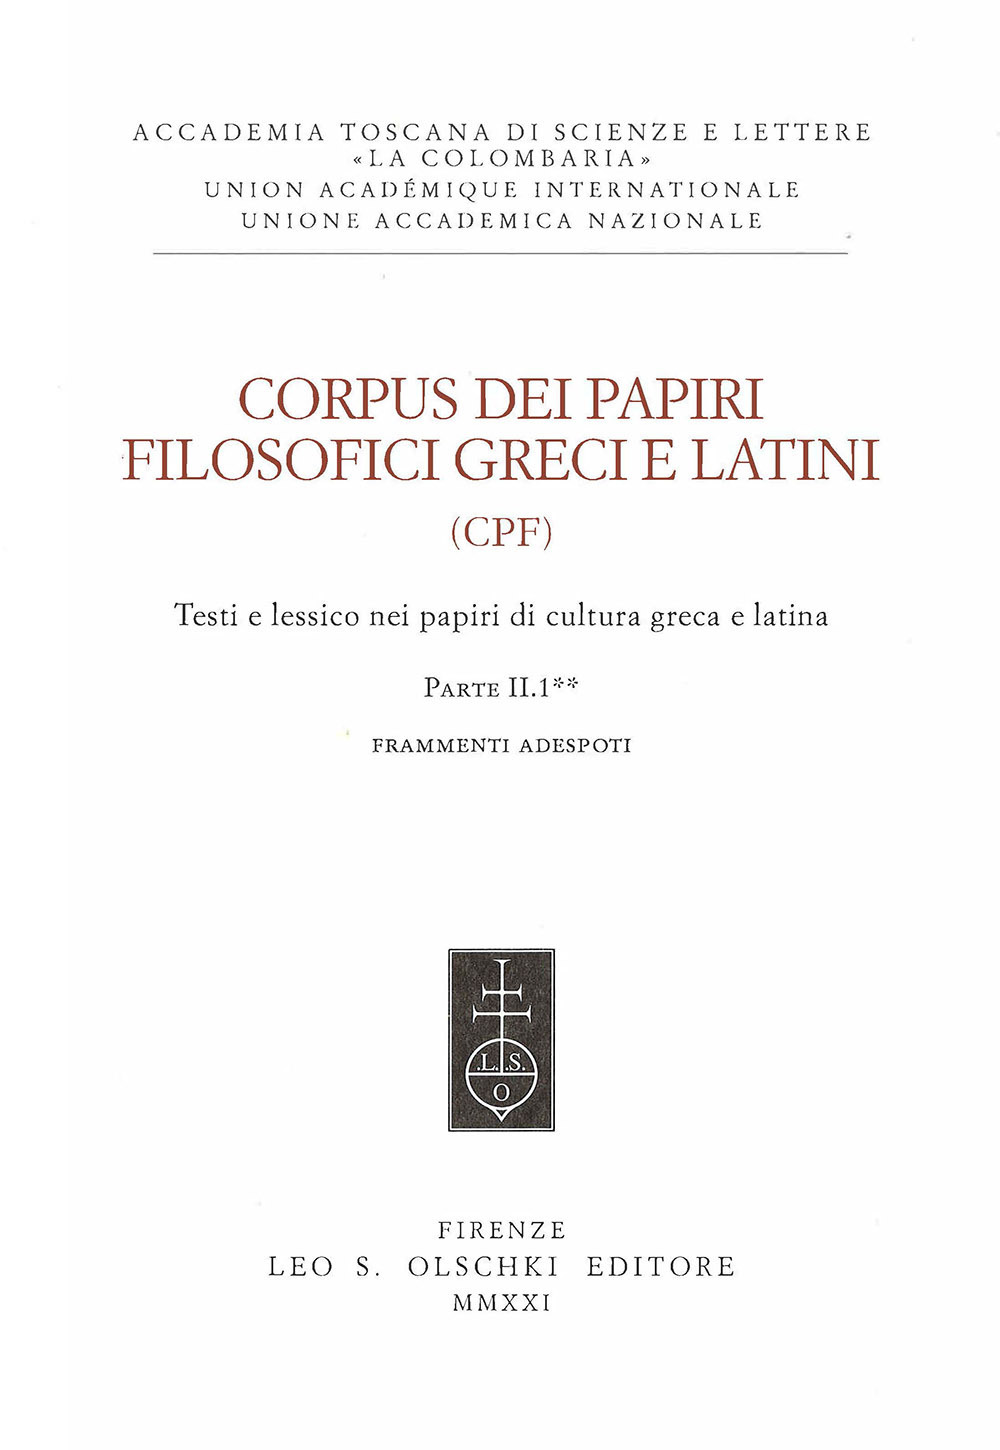 Corpus dei papiri filosofici greci e latini. Testi e lessico nei papiri di cultura greca e latina. Vol. 2/1: Frammenti Adespoti e sentenze